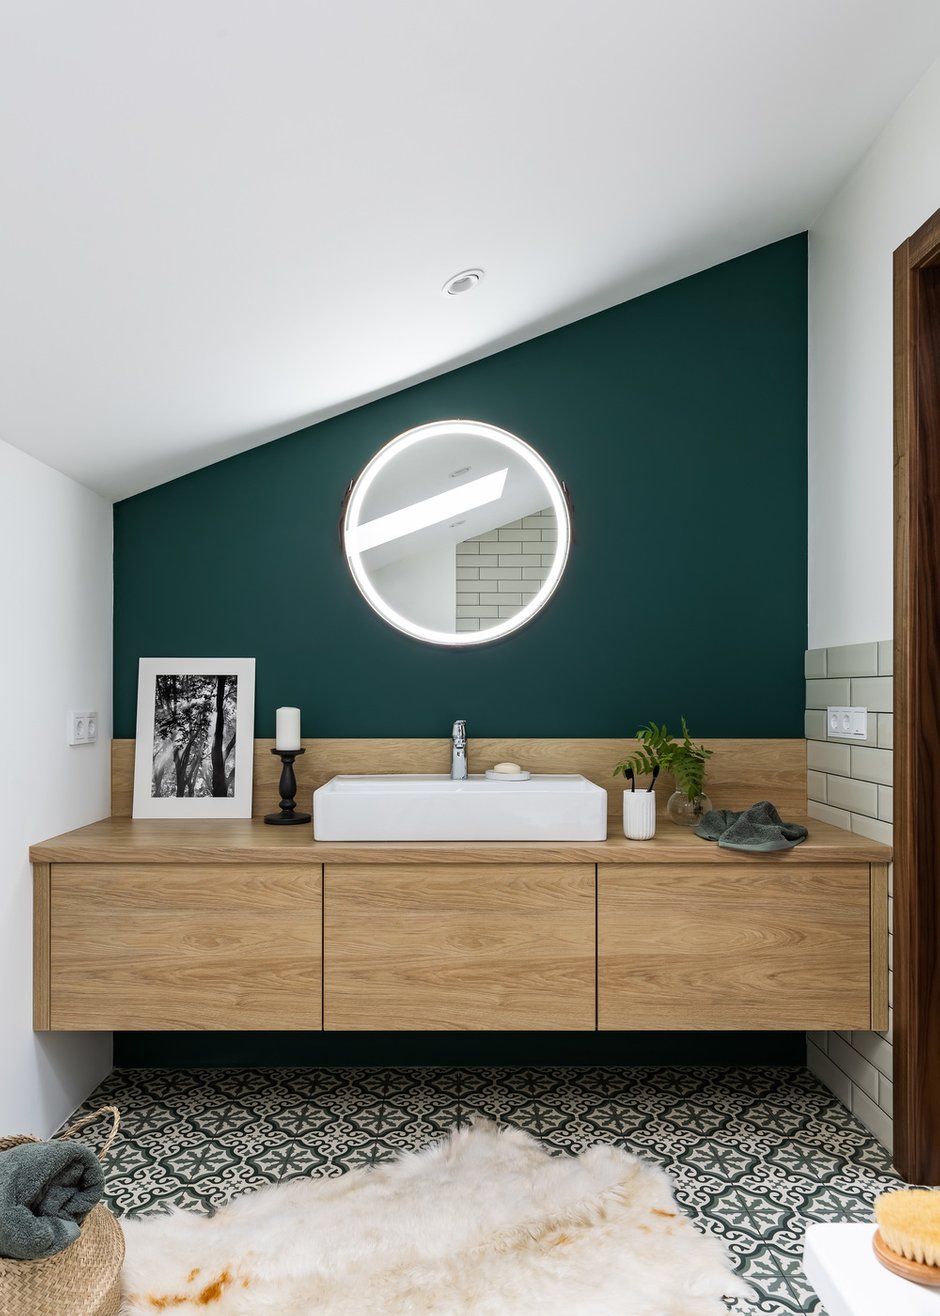 Зону мастер-спальни украшает благородный зеленый цвет. Он доминирует за изголовьем кровати и на одной из стен в ванной комнате.